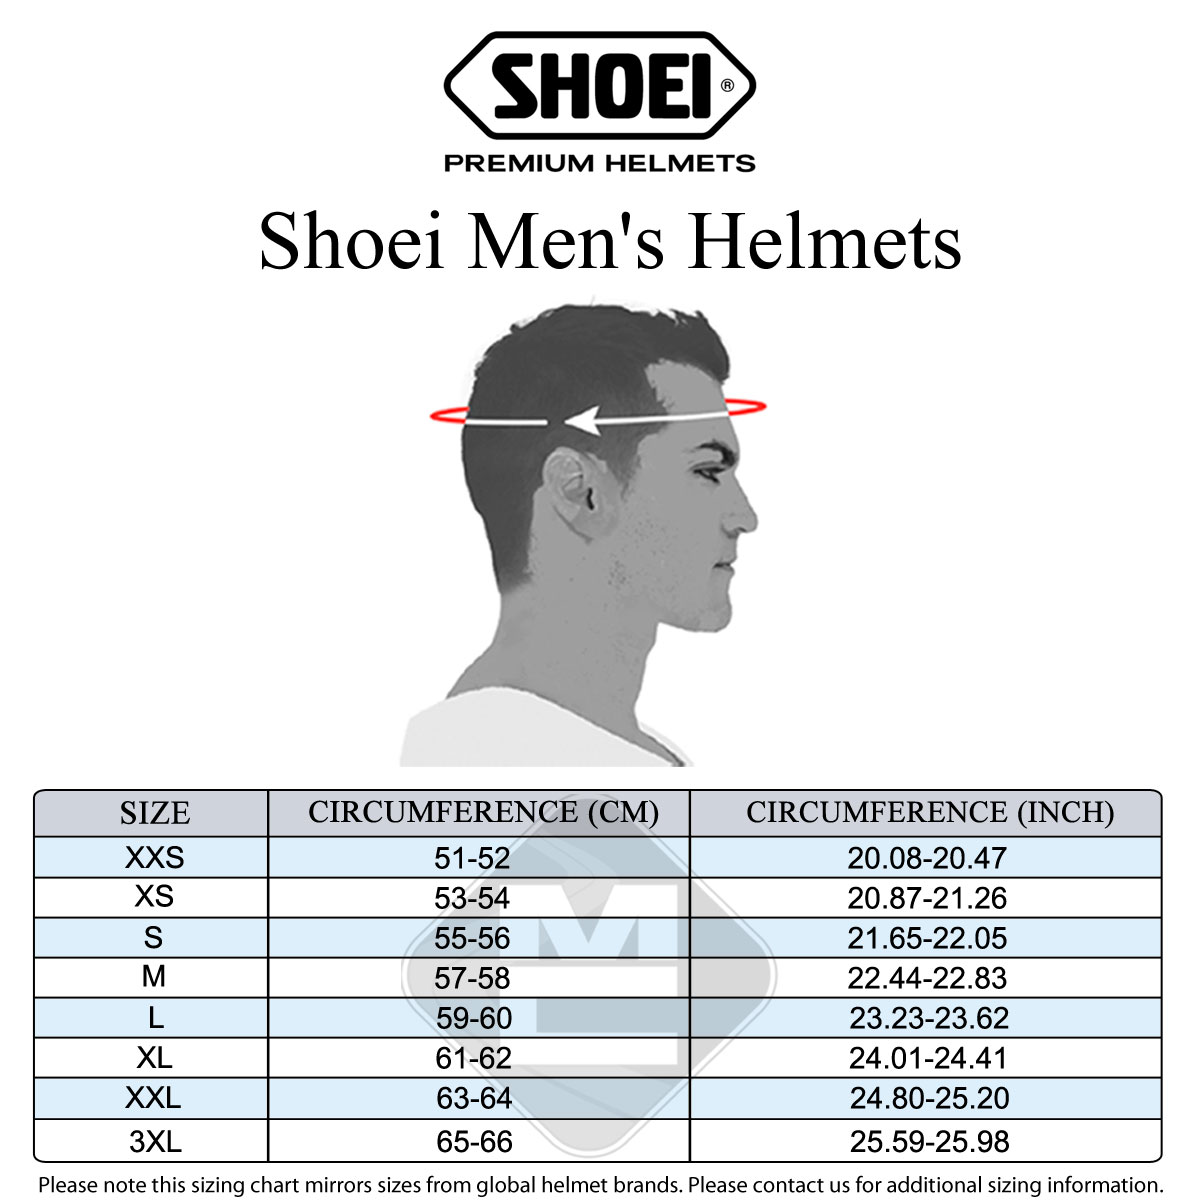 Shoei Men's Size Guide